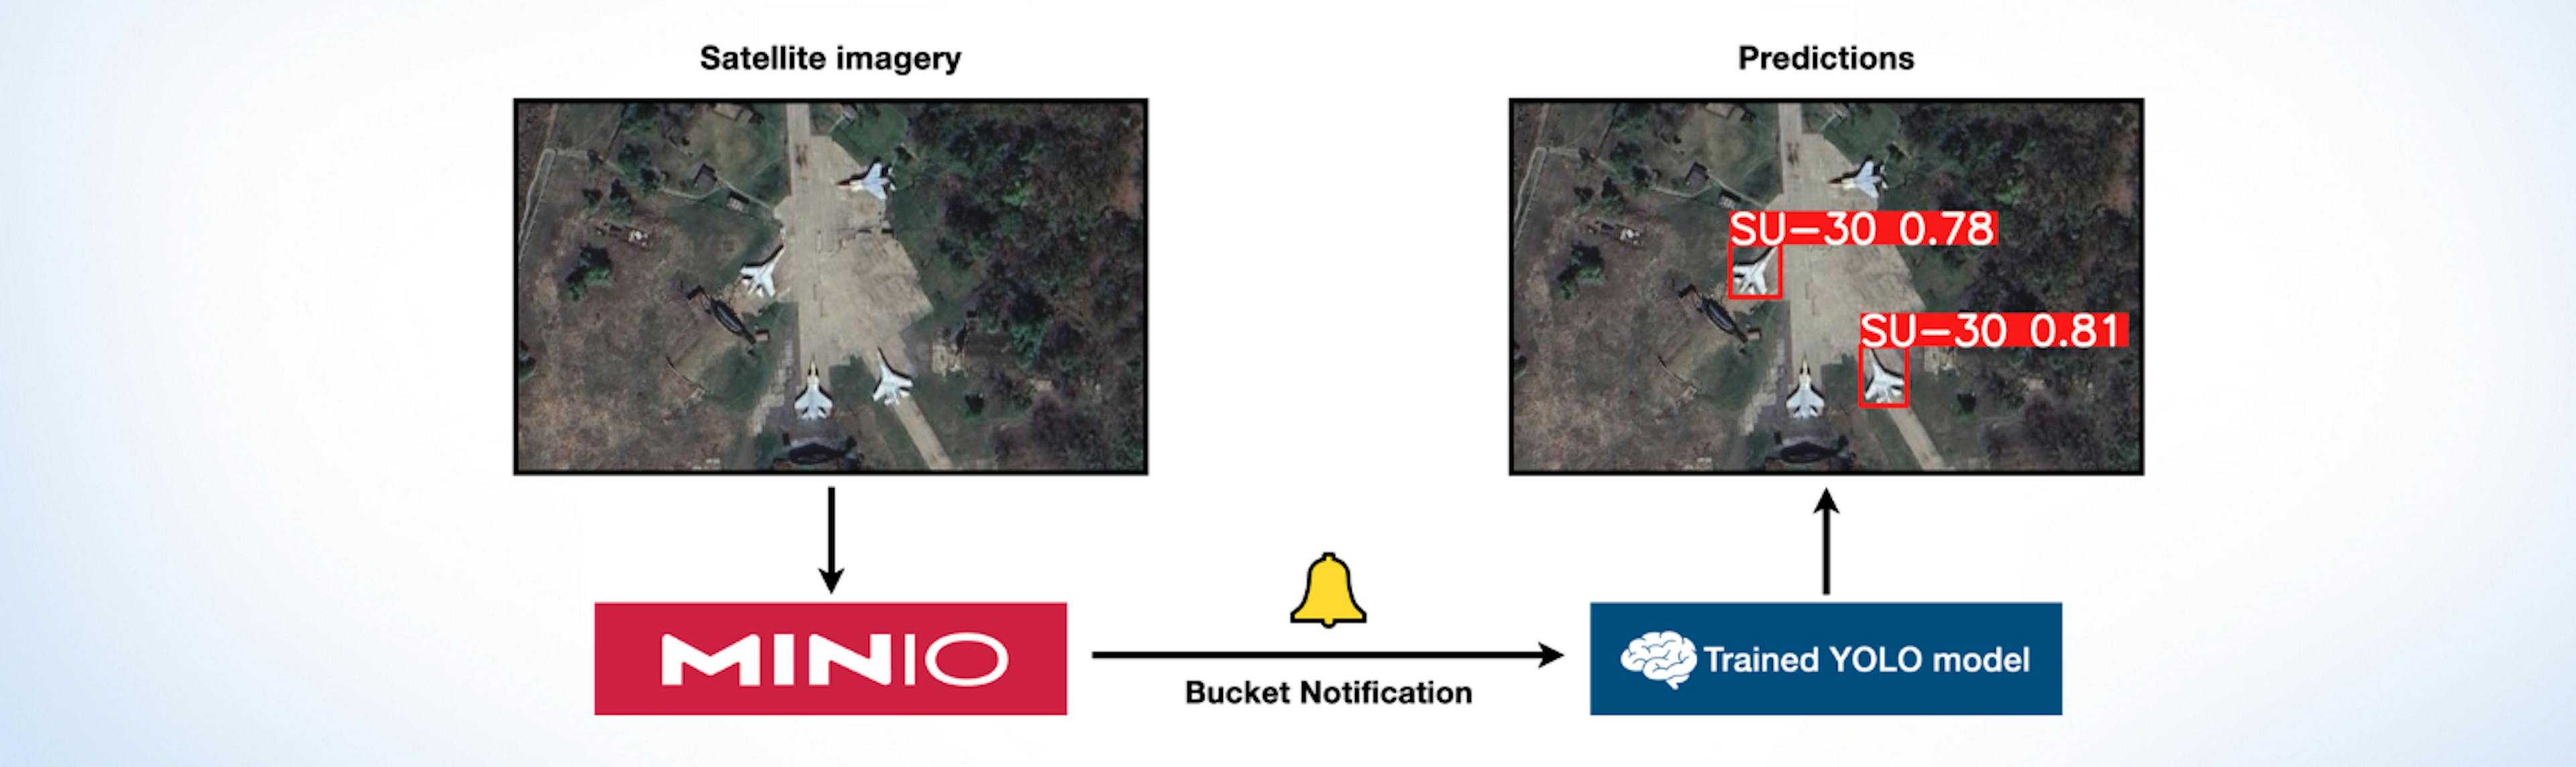 featured image - 如何使用 MinIO 和 YOLO 的自定义数据集训练对象检测模型